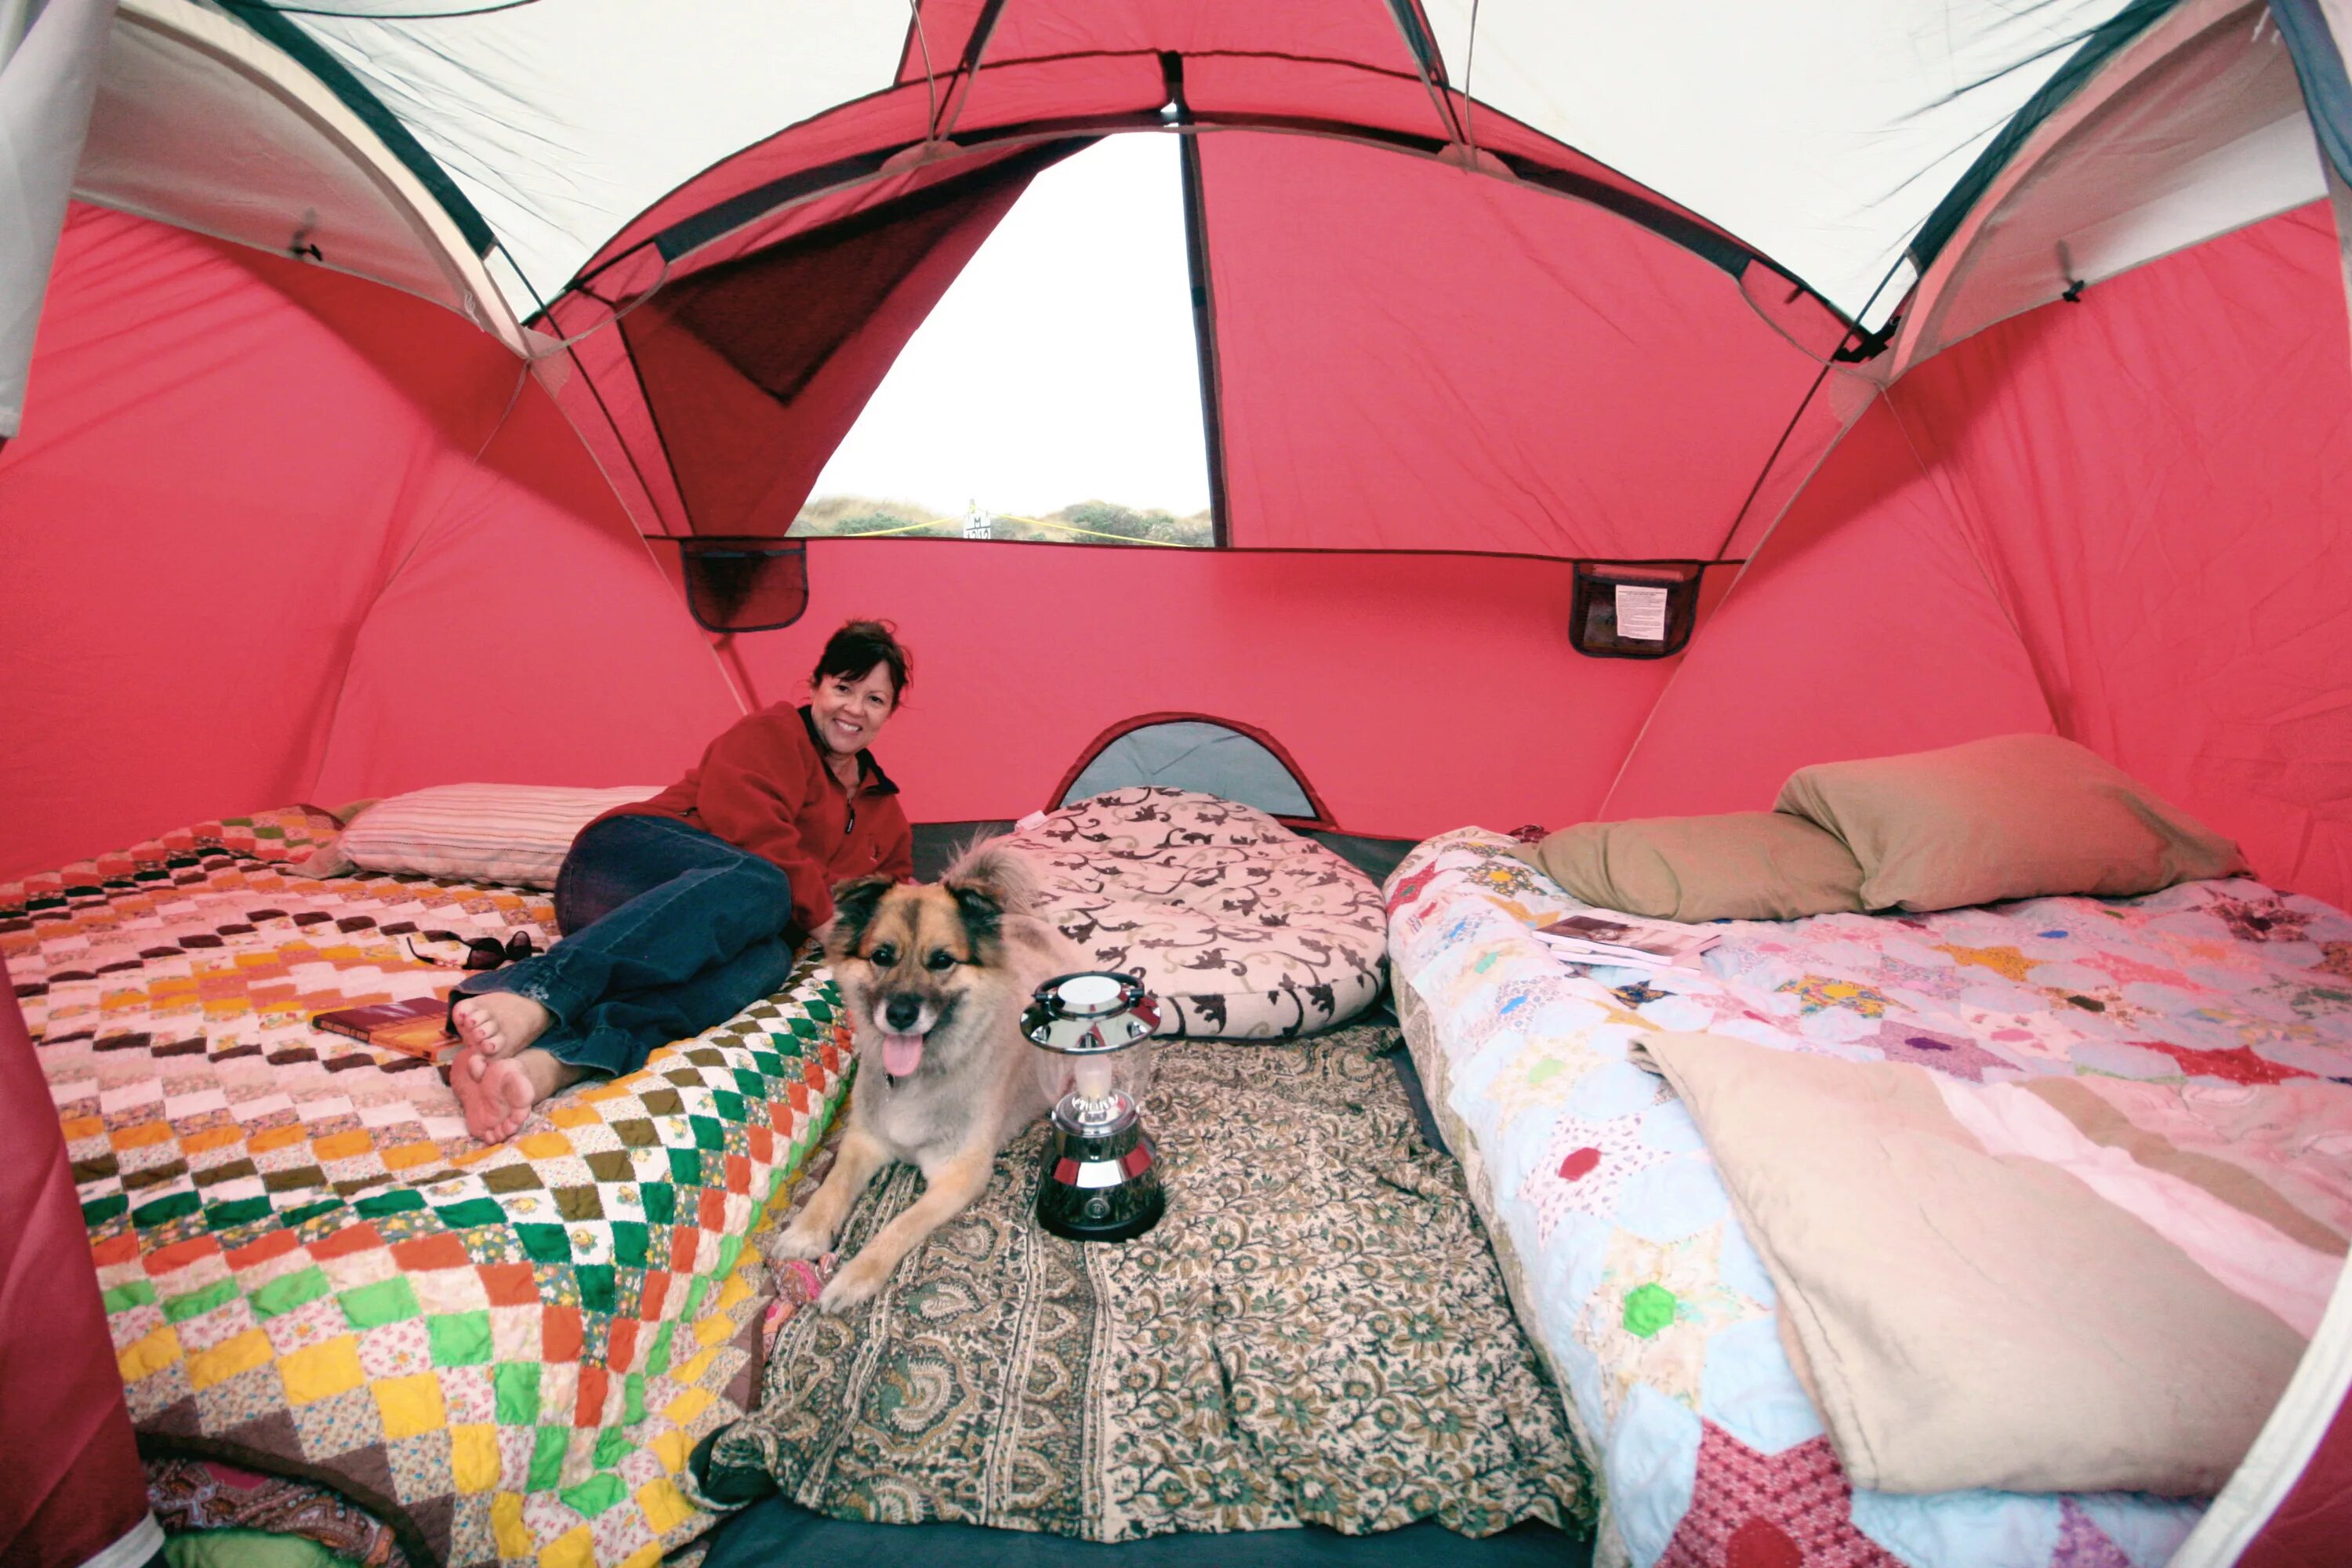 Остановиться переночевать. Большие палатки. Спальное место в палатке. Спальные места в палатке. Спать в палатке.